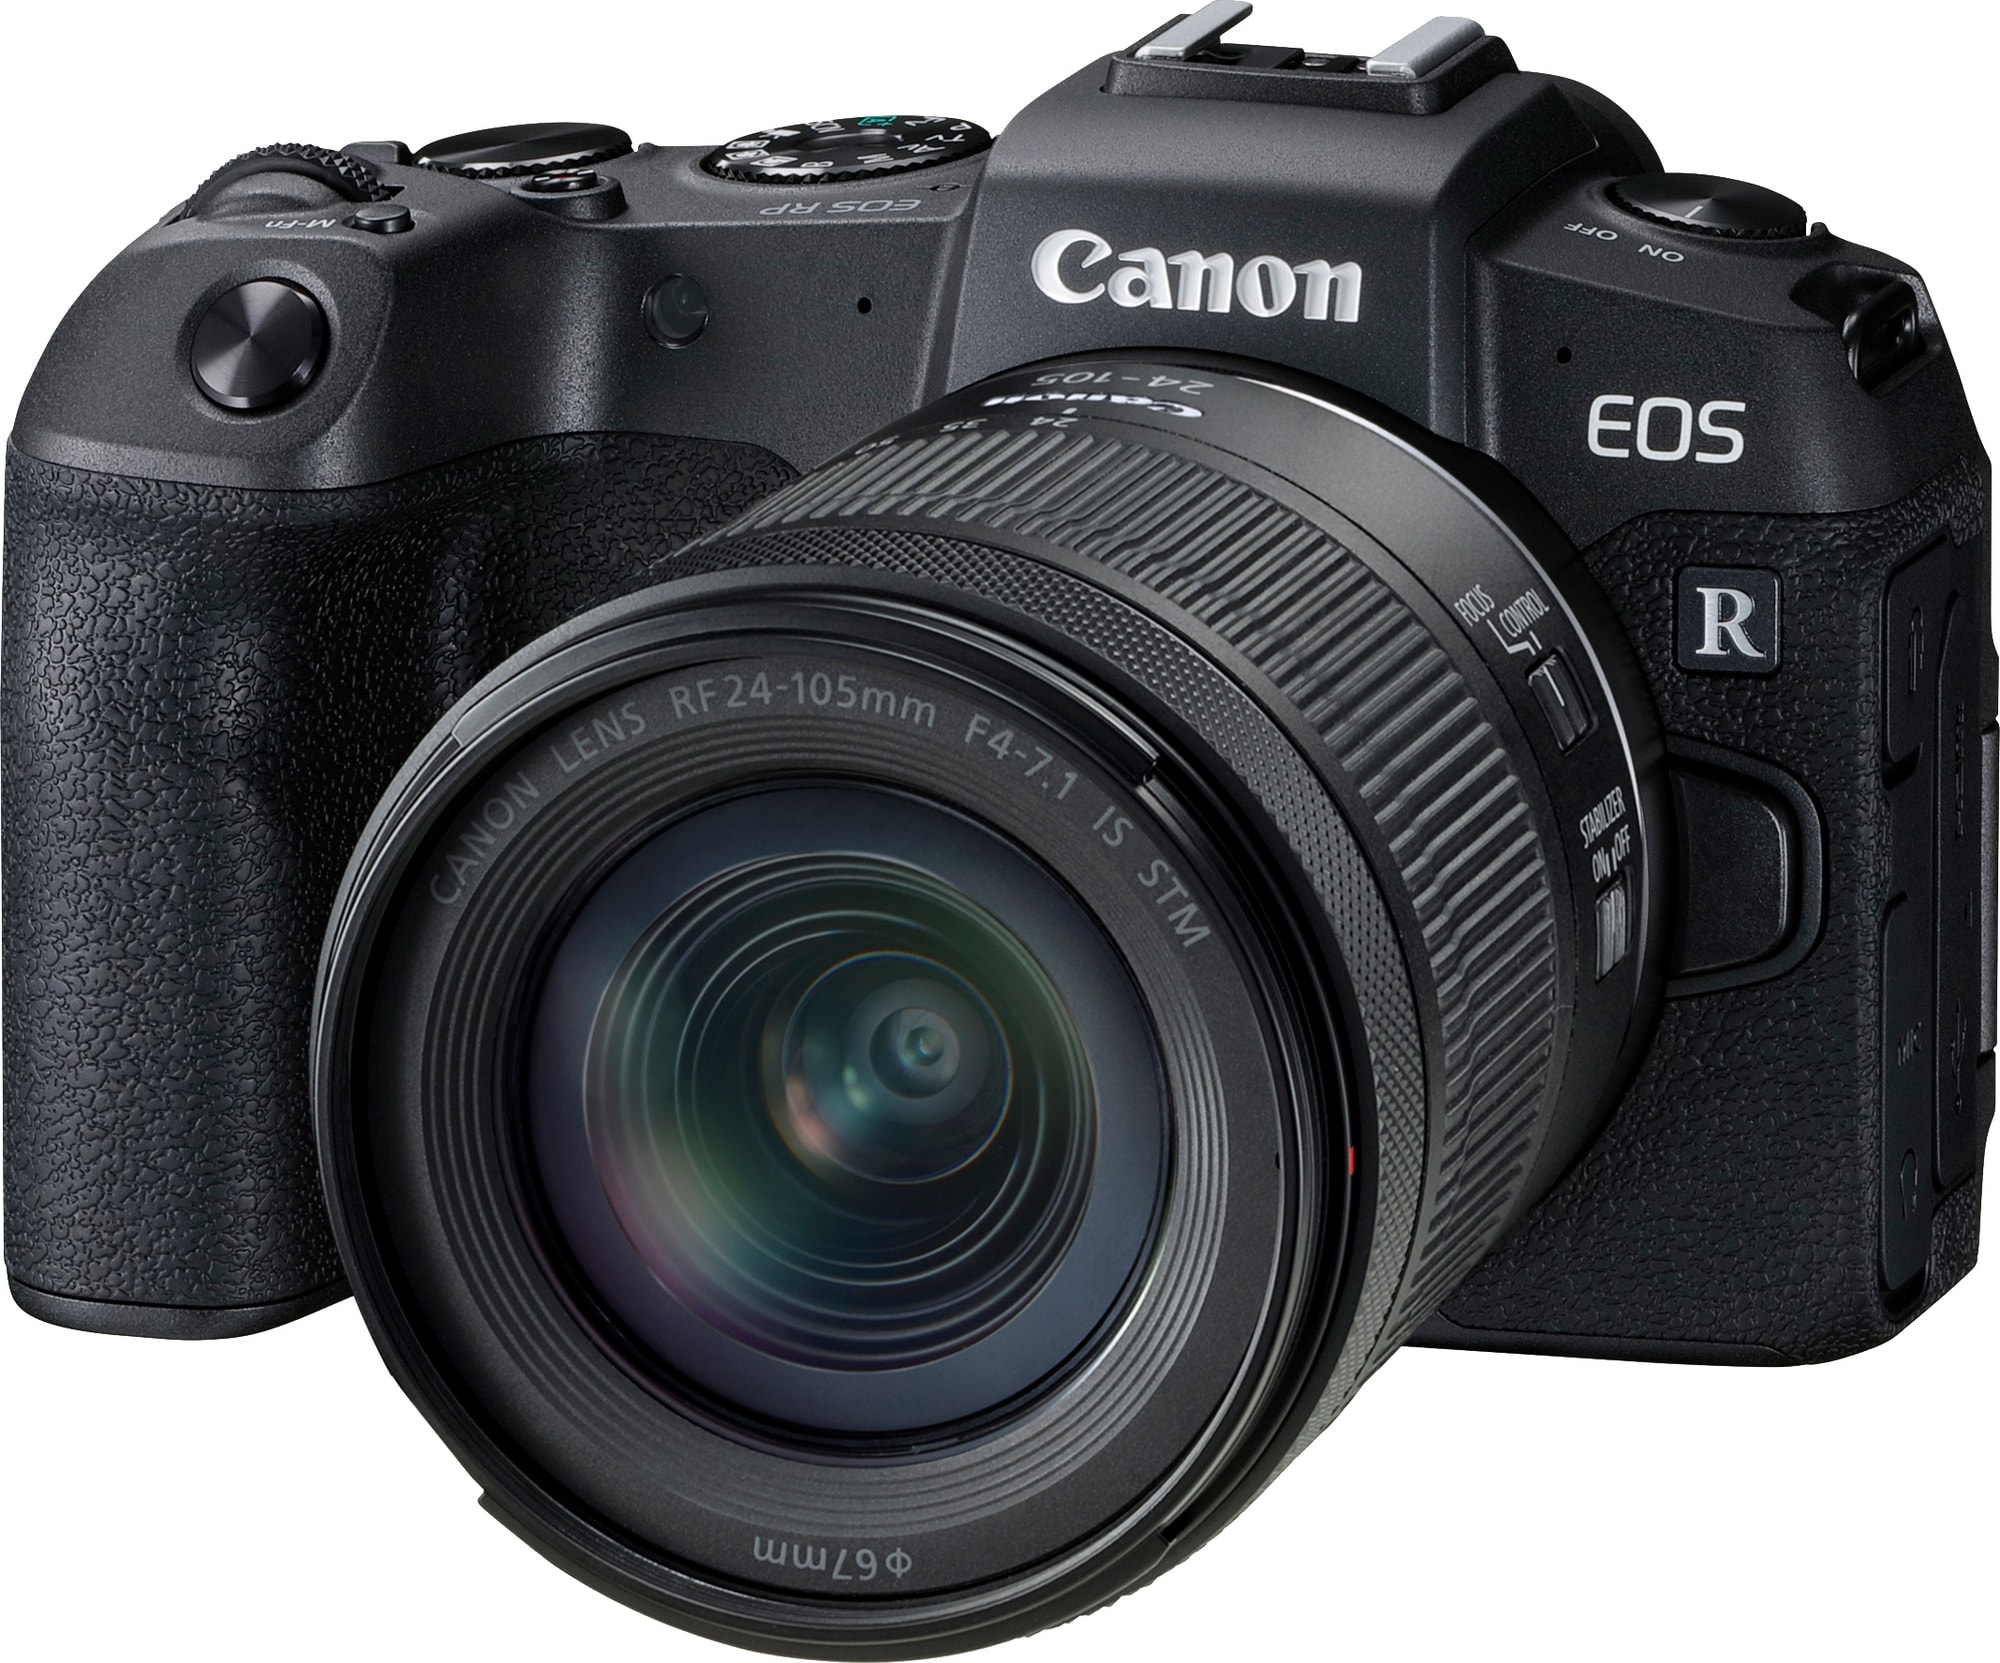 Canon EOS RP digitaalikamera + RF 24-105mm F4-7.1 IS STM objektiivi -  Gigantti verkkokauppa